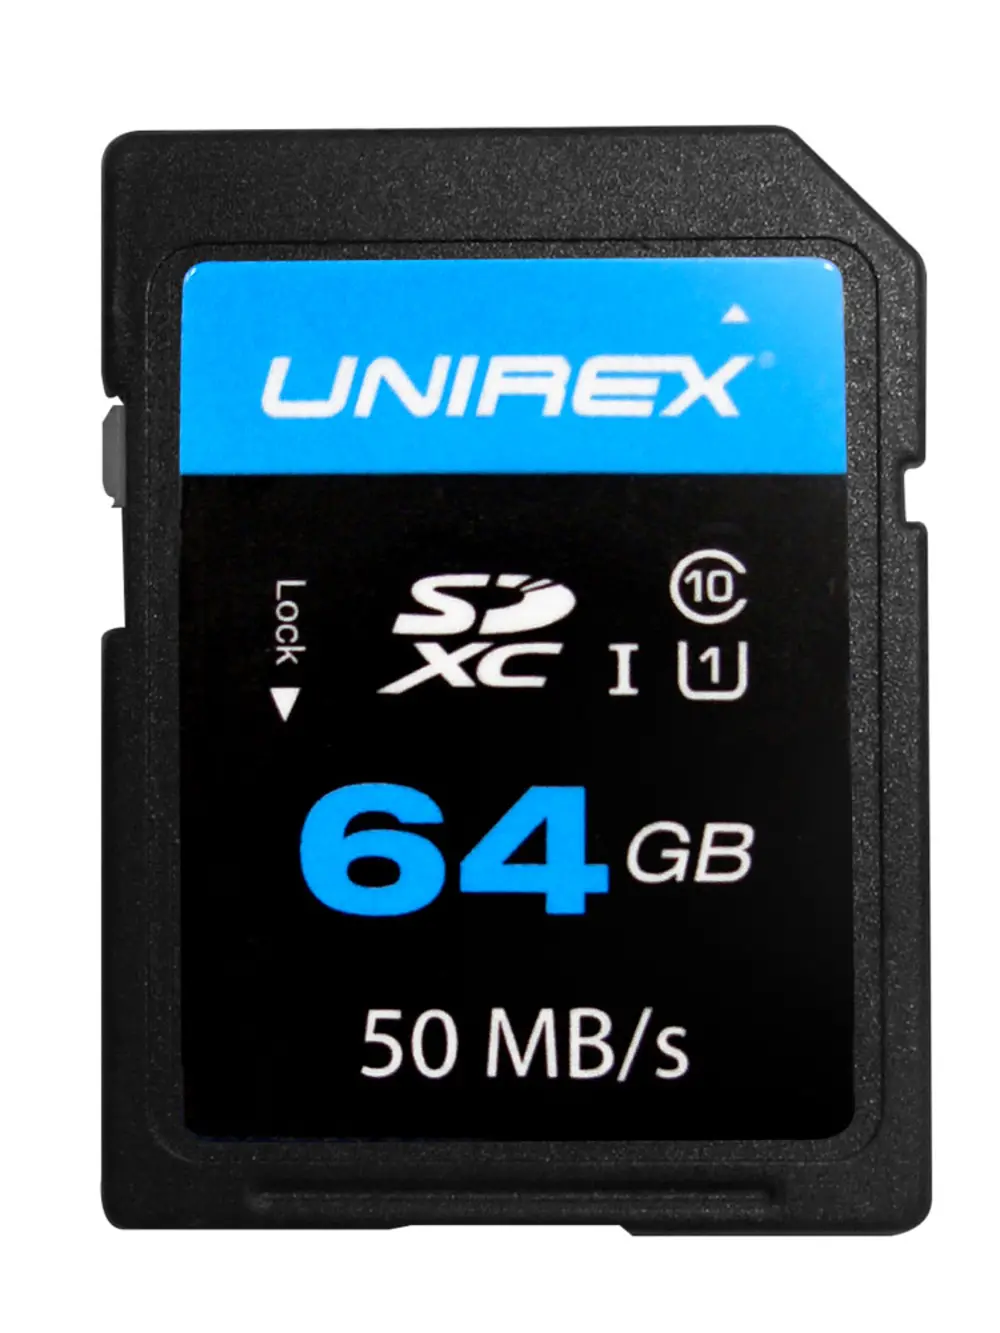 Unirex 64GB UHS-1 SD Card-1